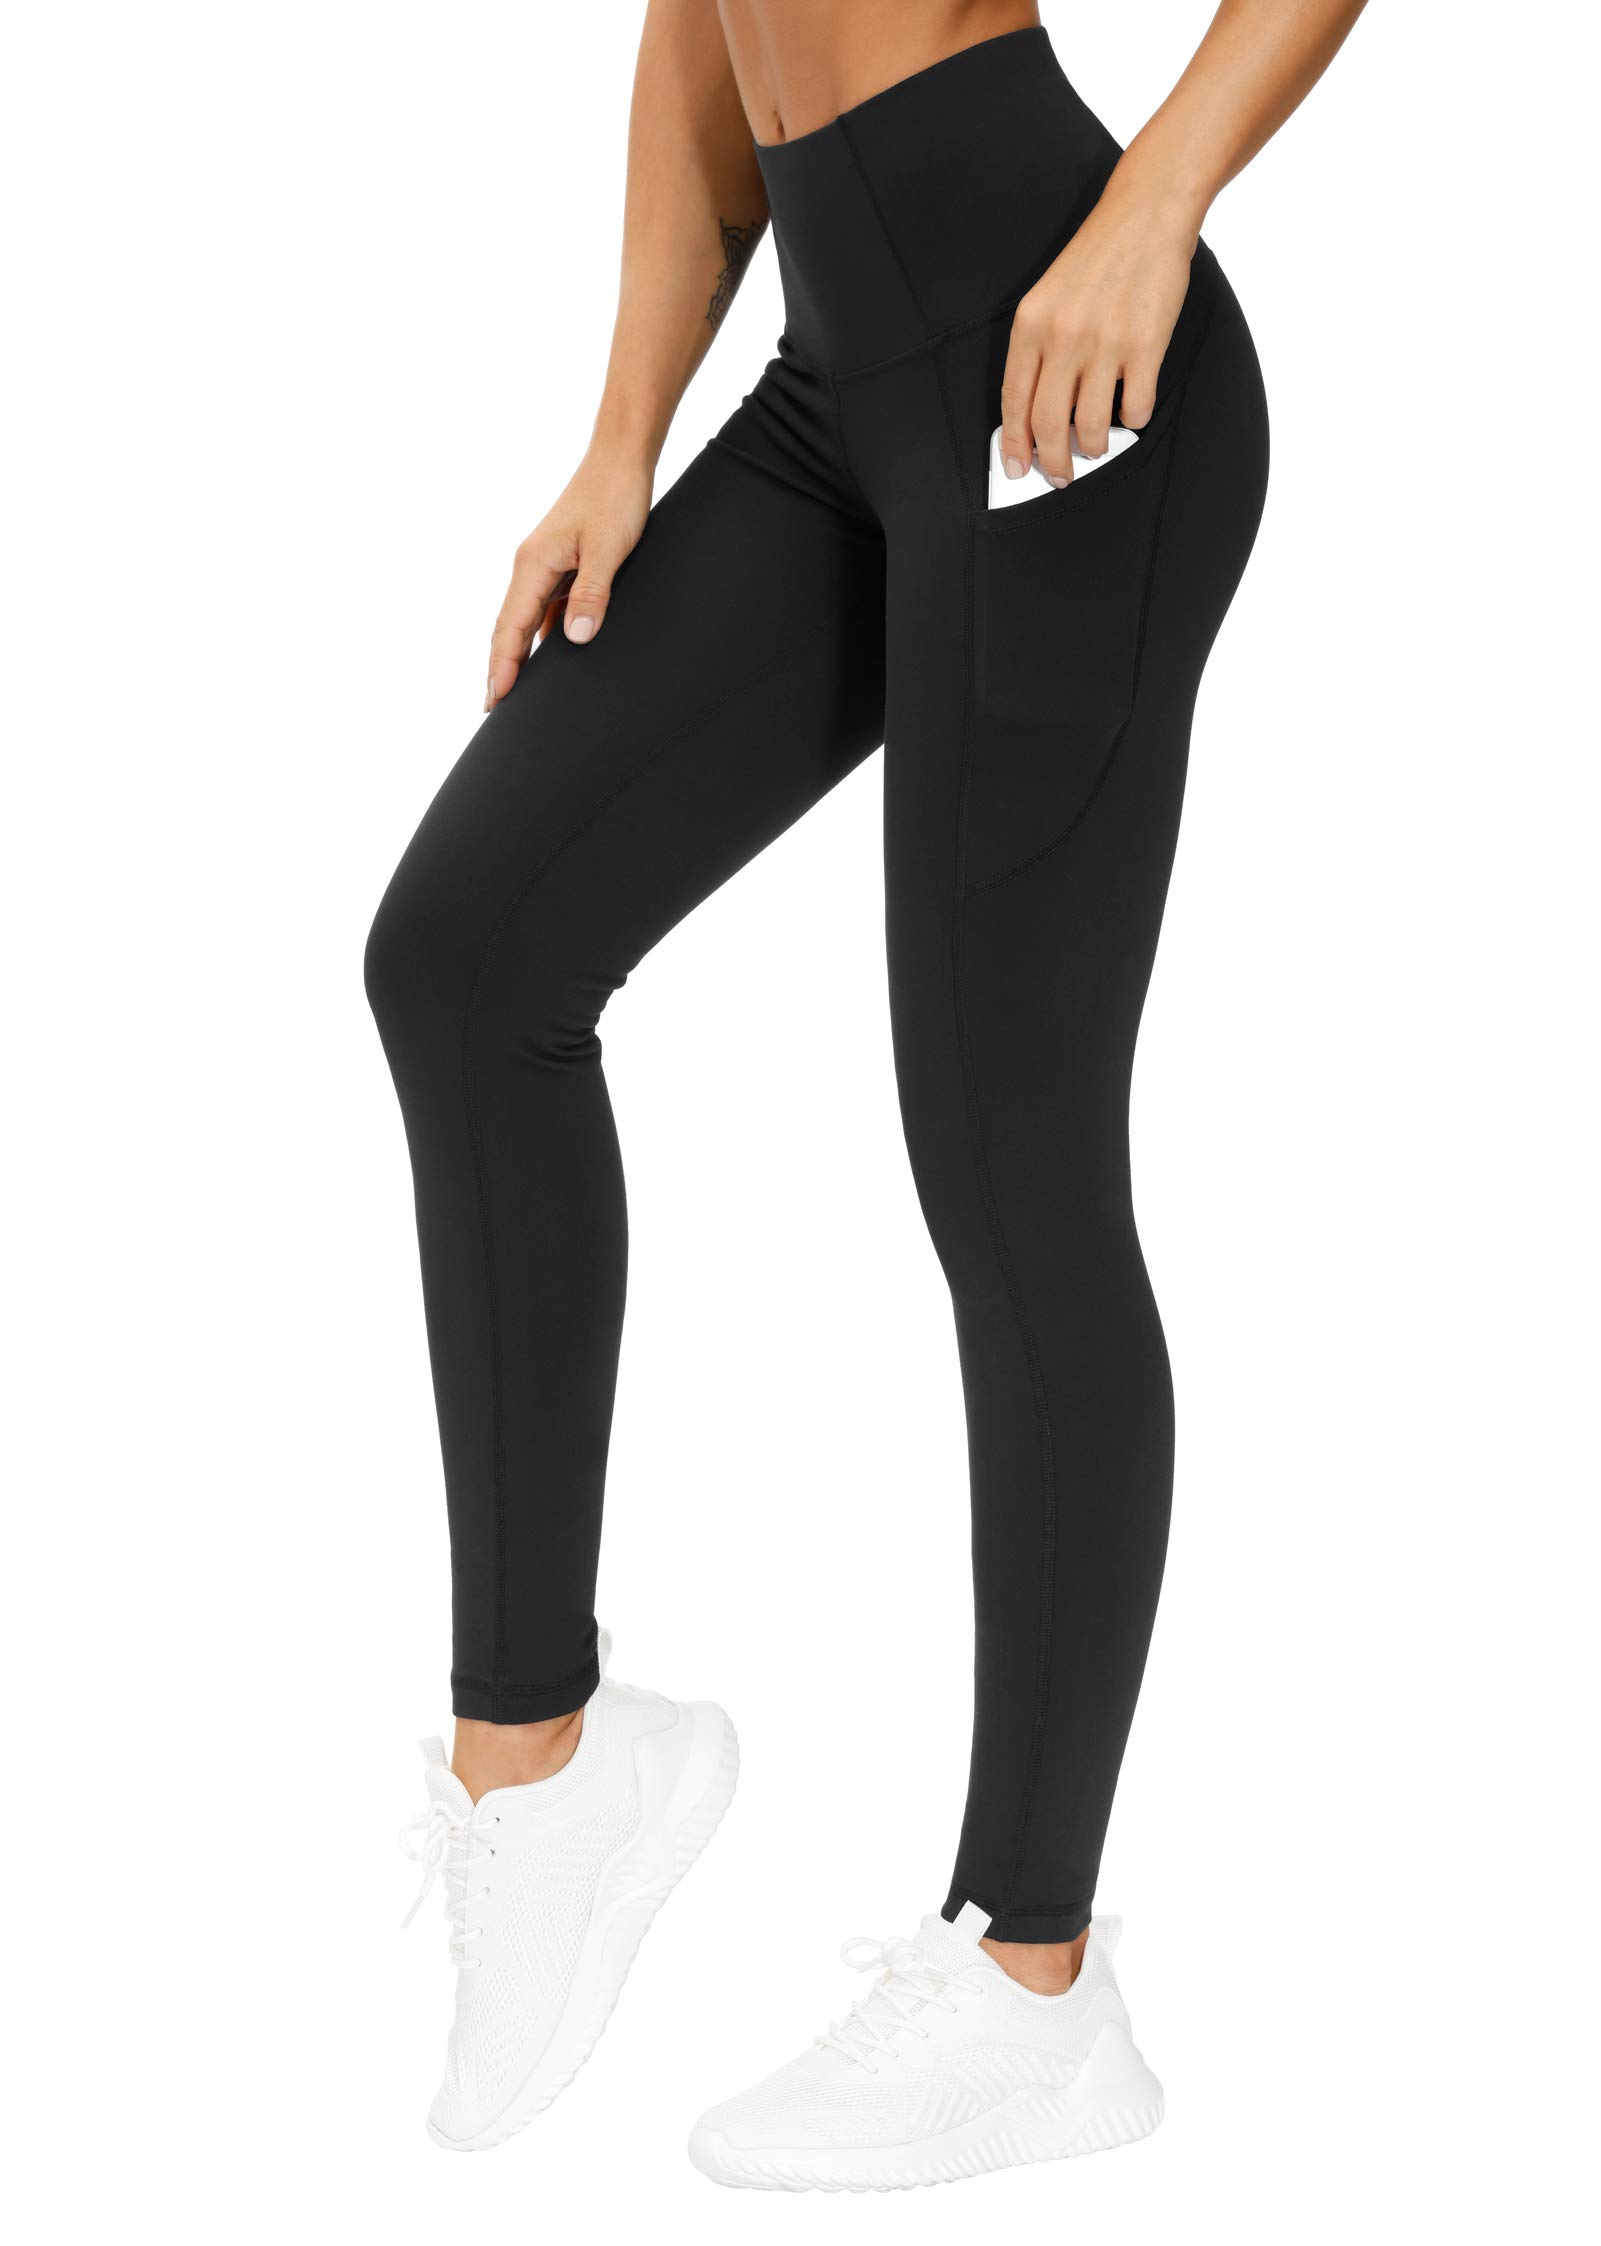 AFITNE Yoga Pants for Women High Waisted Capri Leggings with Inner Pockets 